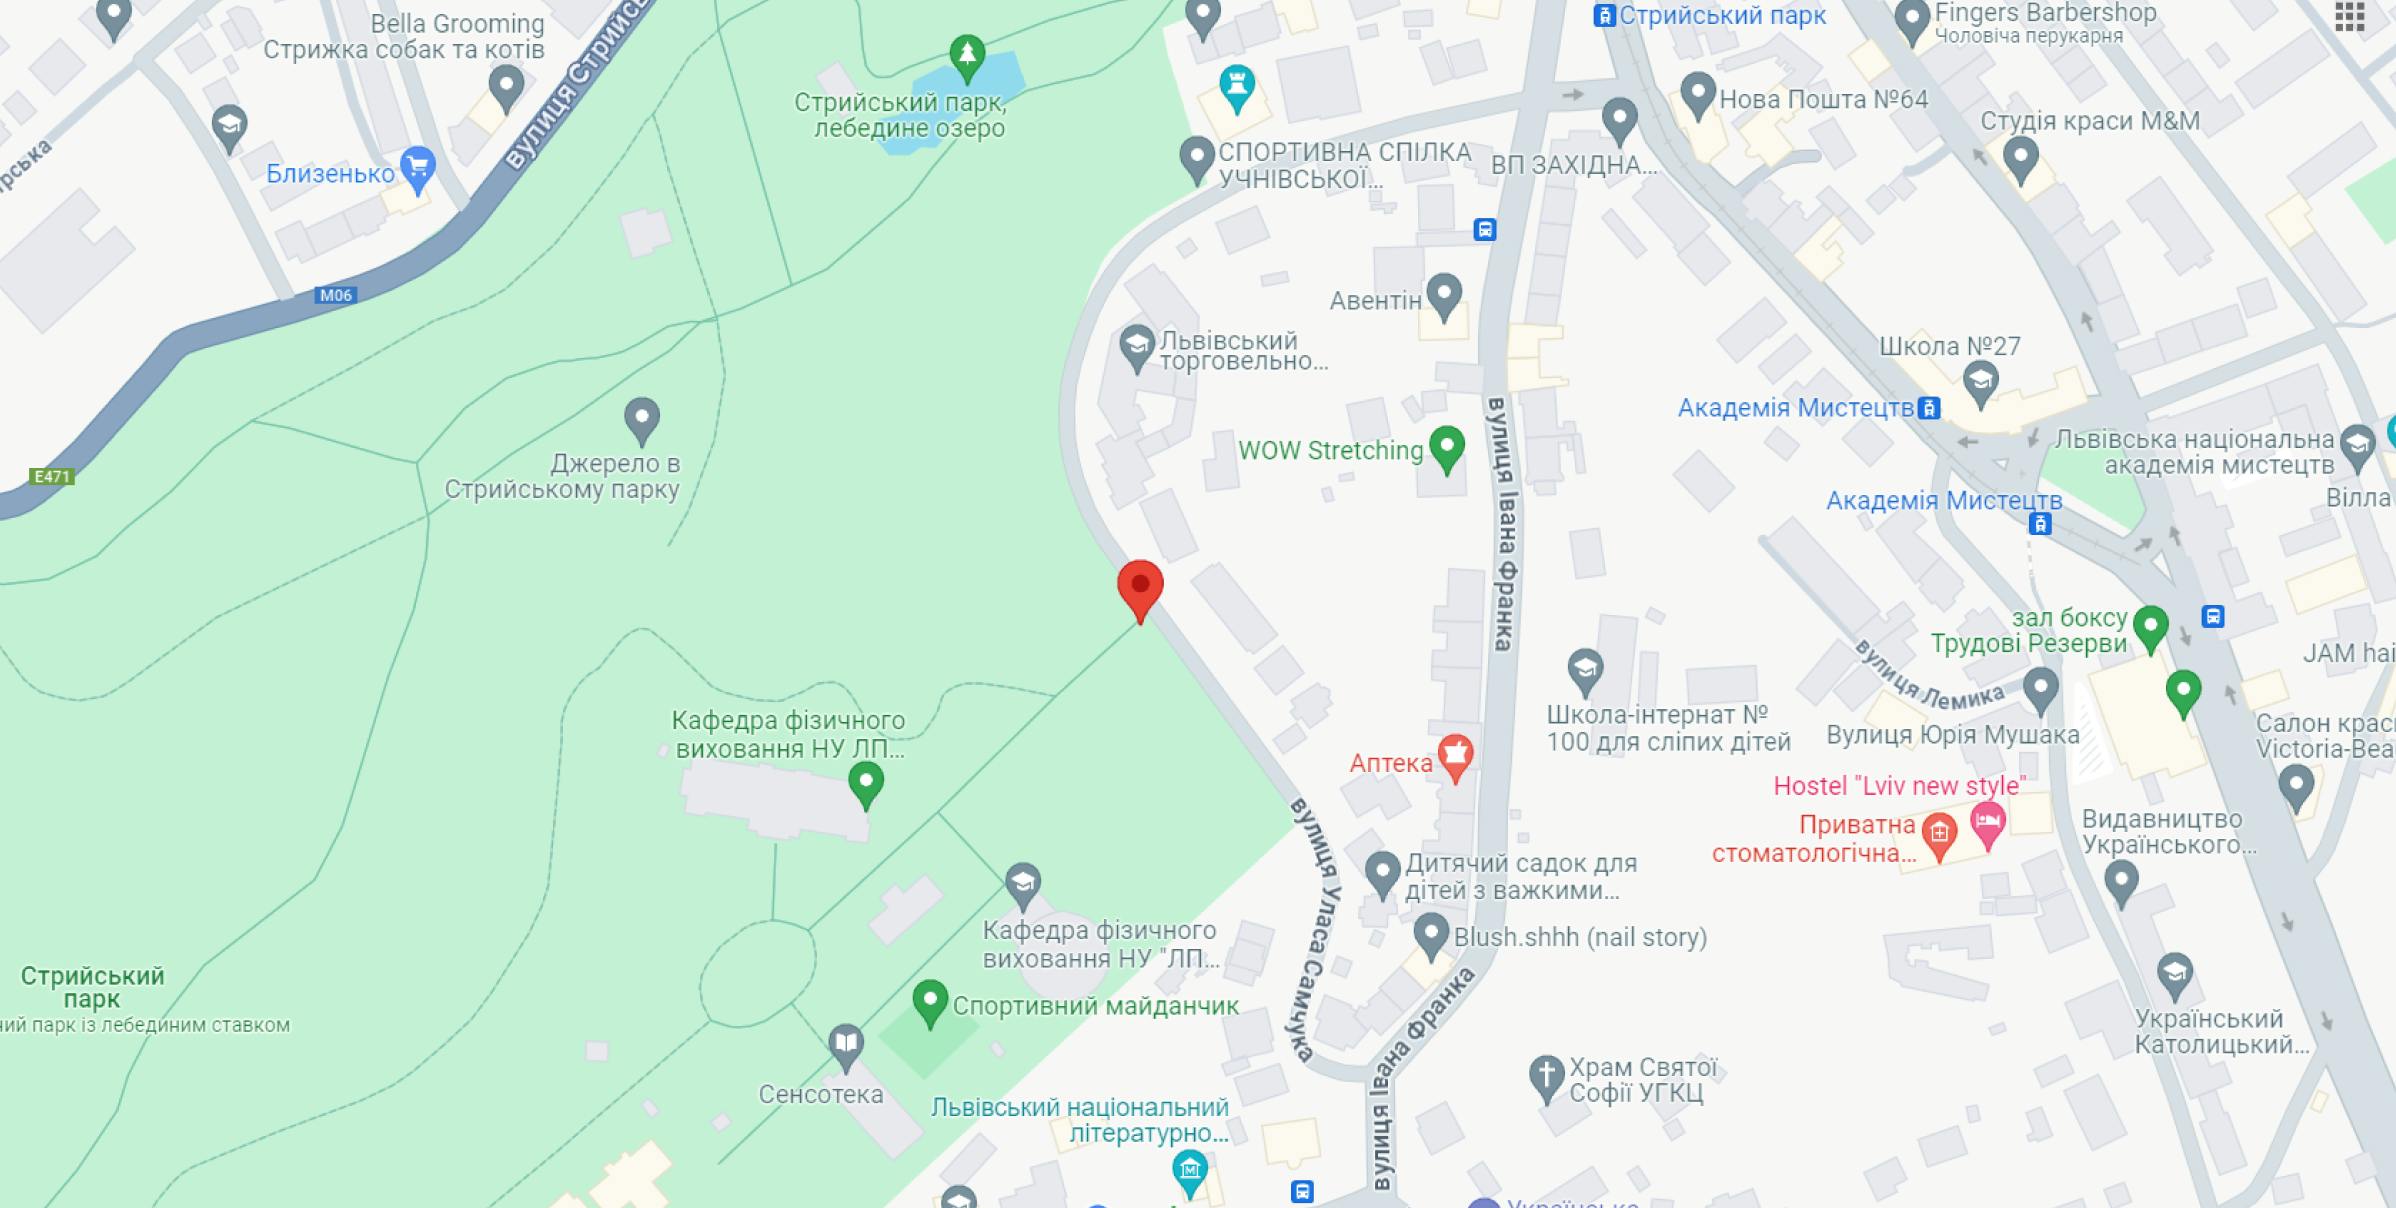 На зображенні - карта Львова з зазначенням місця старту забігу Runday у Стрийському парку